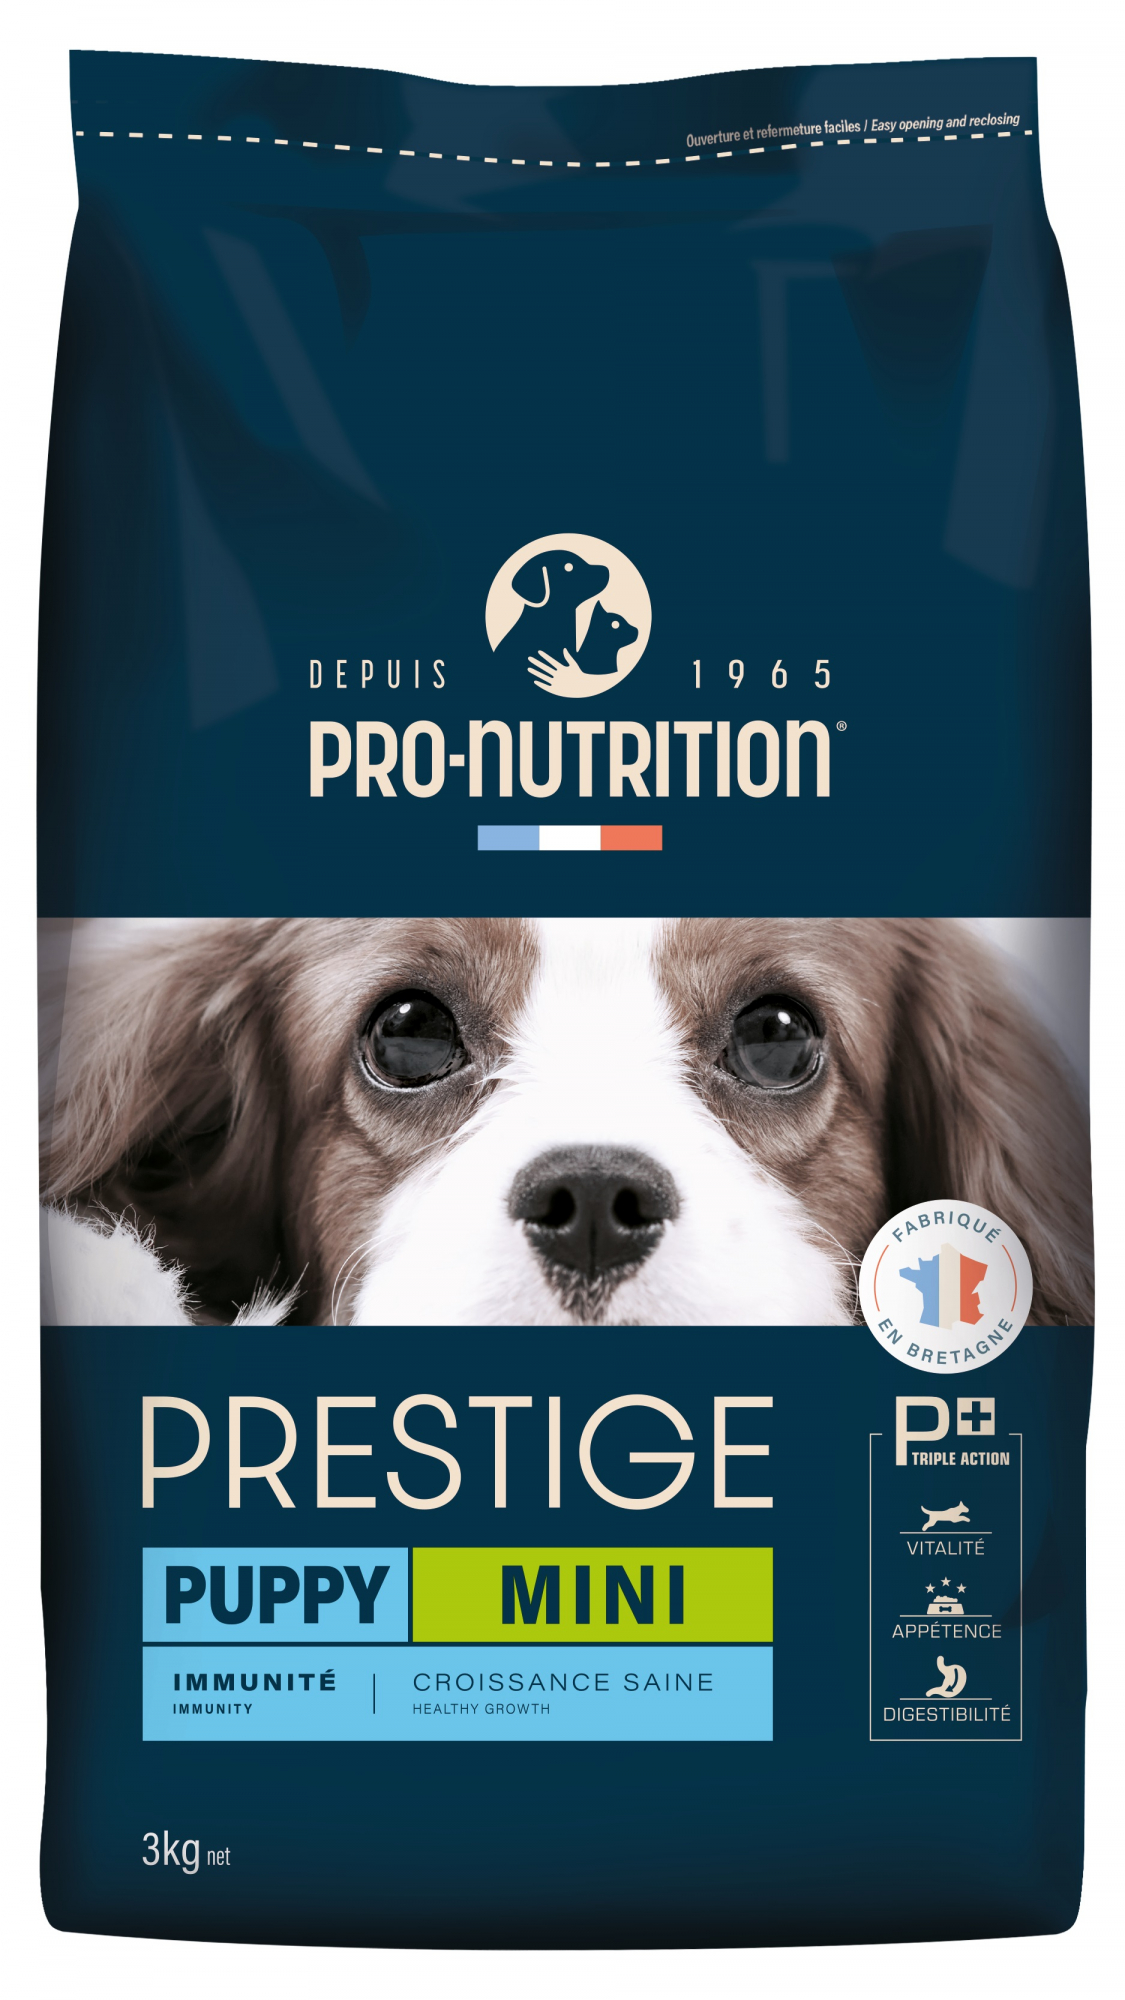 PRO-NUTRITION PRESTIGE Puppy Mini pour Chiot de Petite Taille